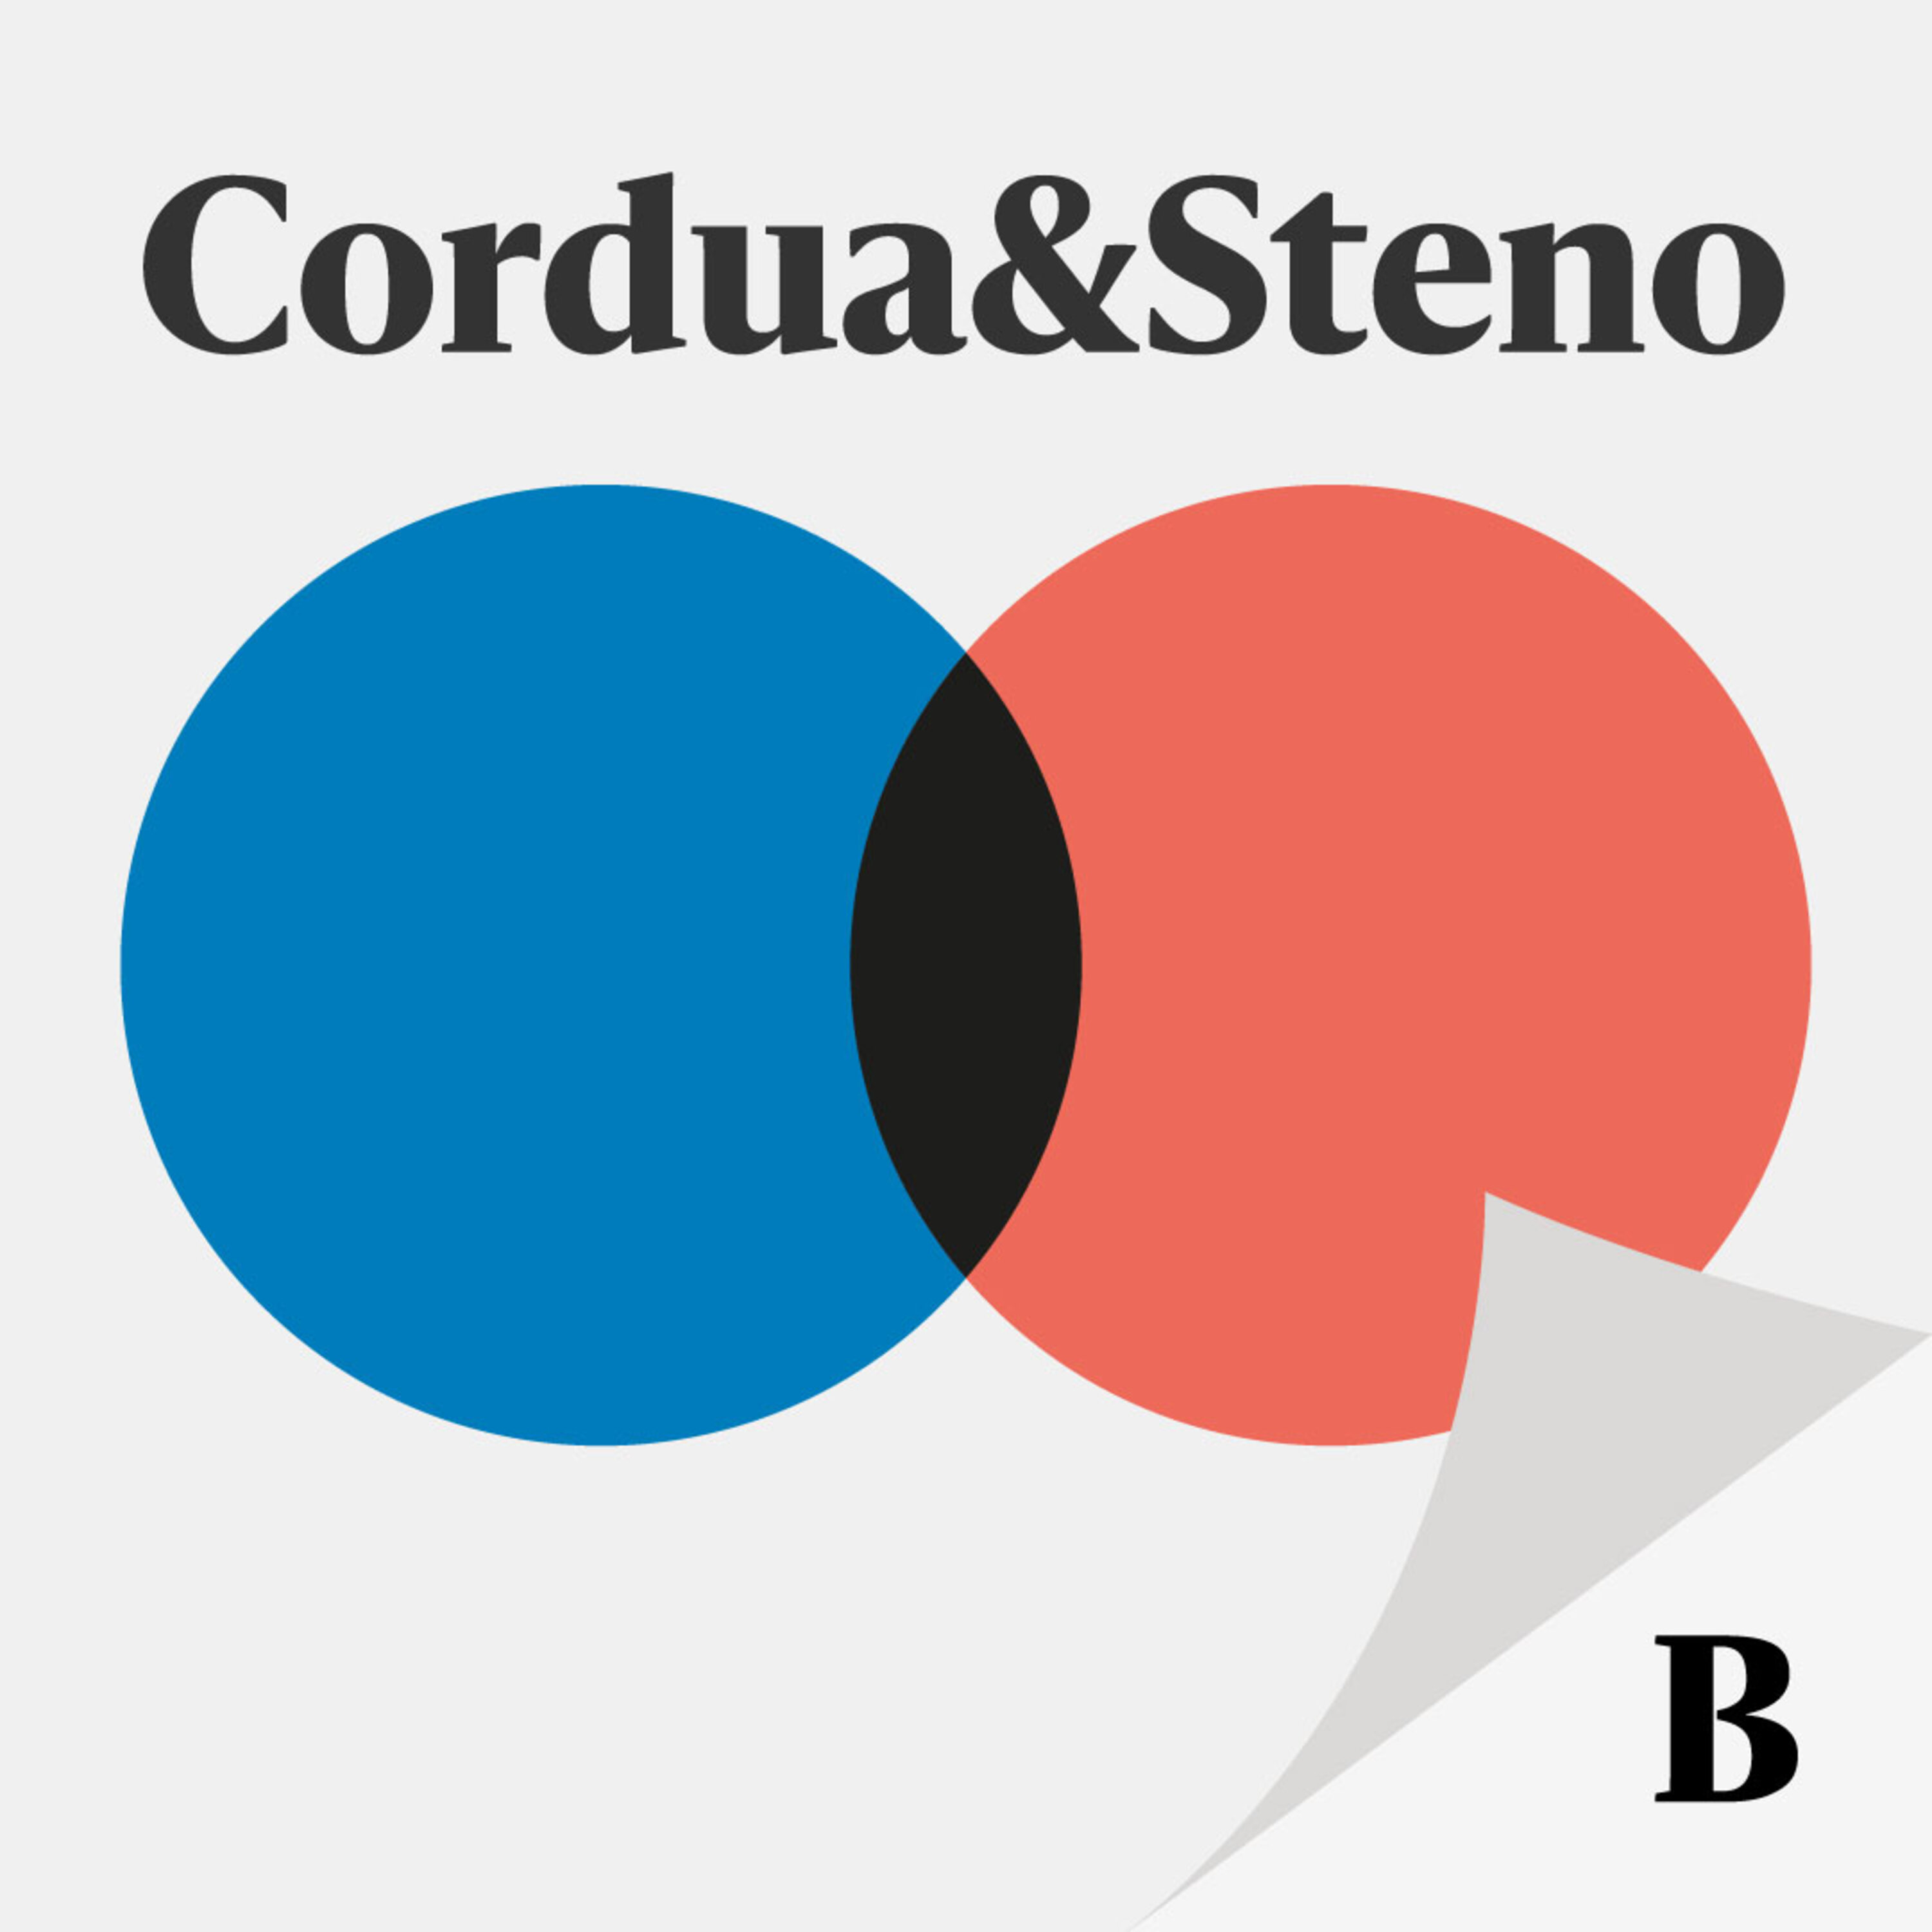 Cordua & Stenos valgspecial:  Ny radikal leder på vej – hvad med Papes fremtid?